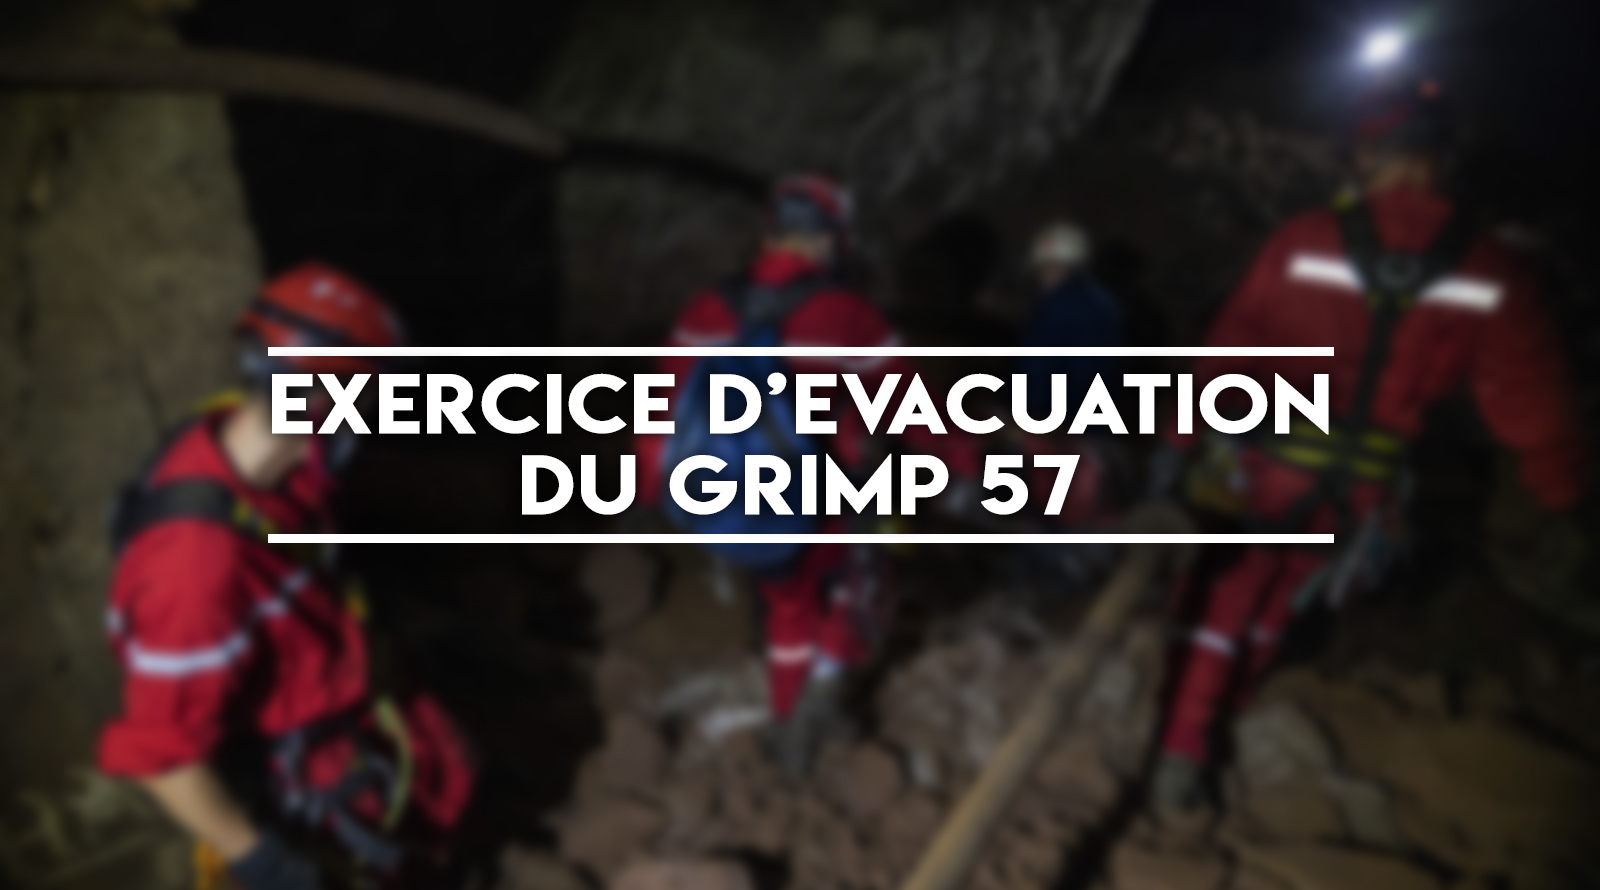 Exercice d’évacuation par le GRIMP57